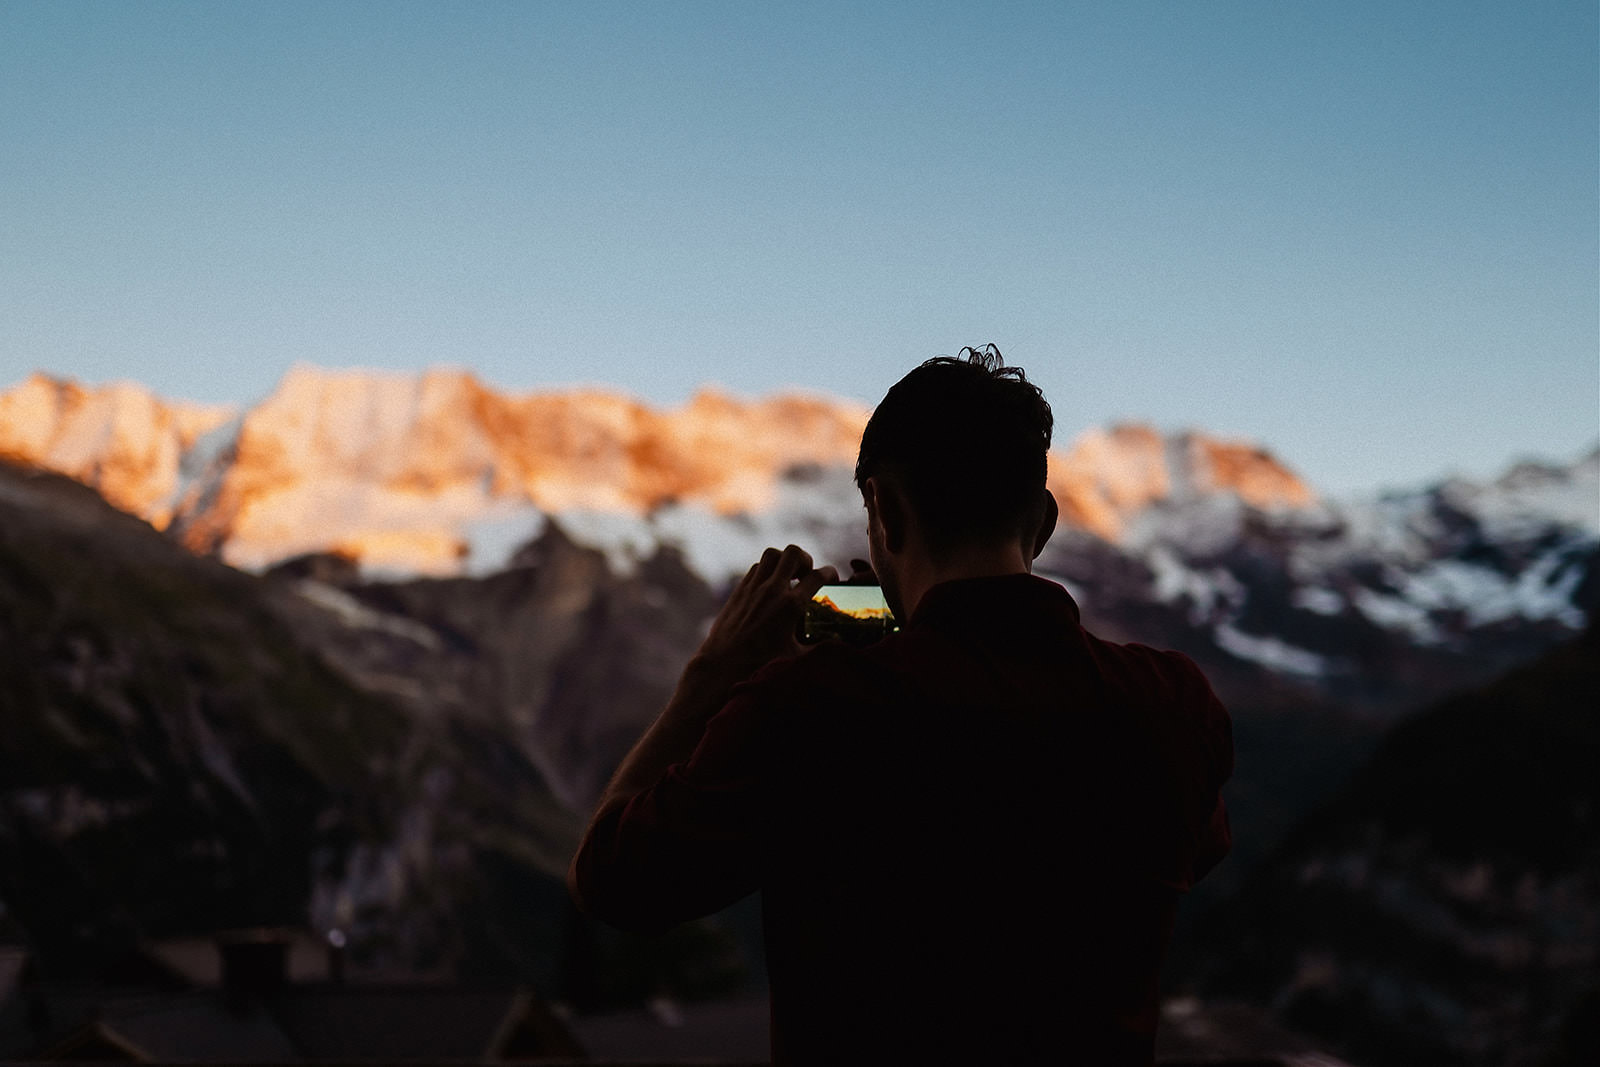 hochzeitsfotograf lauterbrunnen schweiz bergfoto